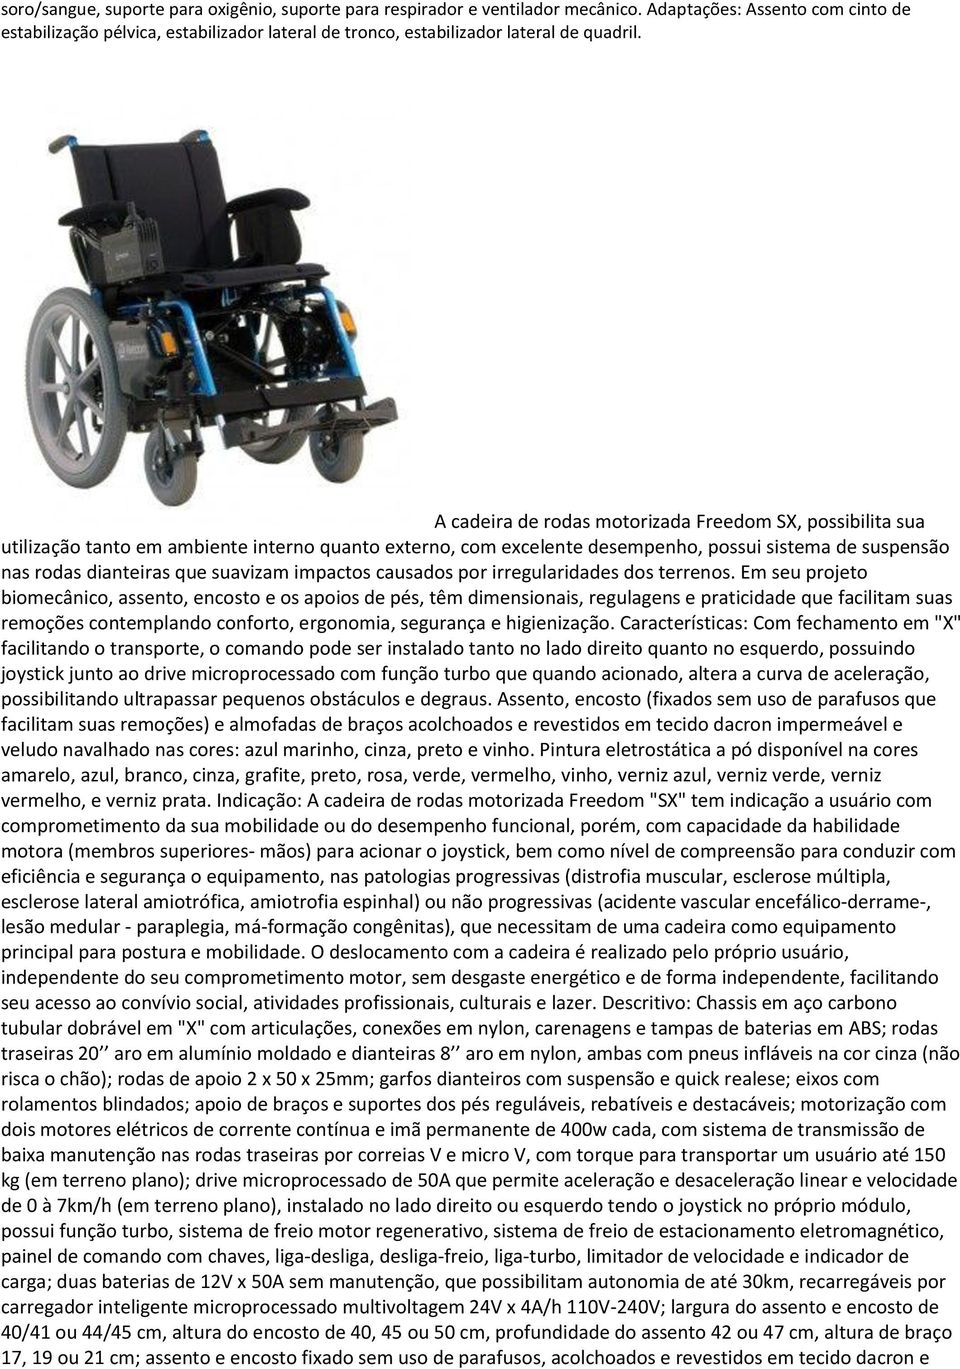 A cadeira de rodas motorizada Freedom SX, possibilita sua utilização tanto em ambiente interno quanto externo, com excelente desempenho, possui sistema de suspensão nas rodas dianteiras que suavizam